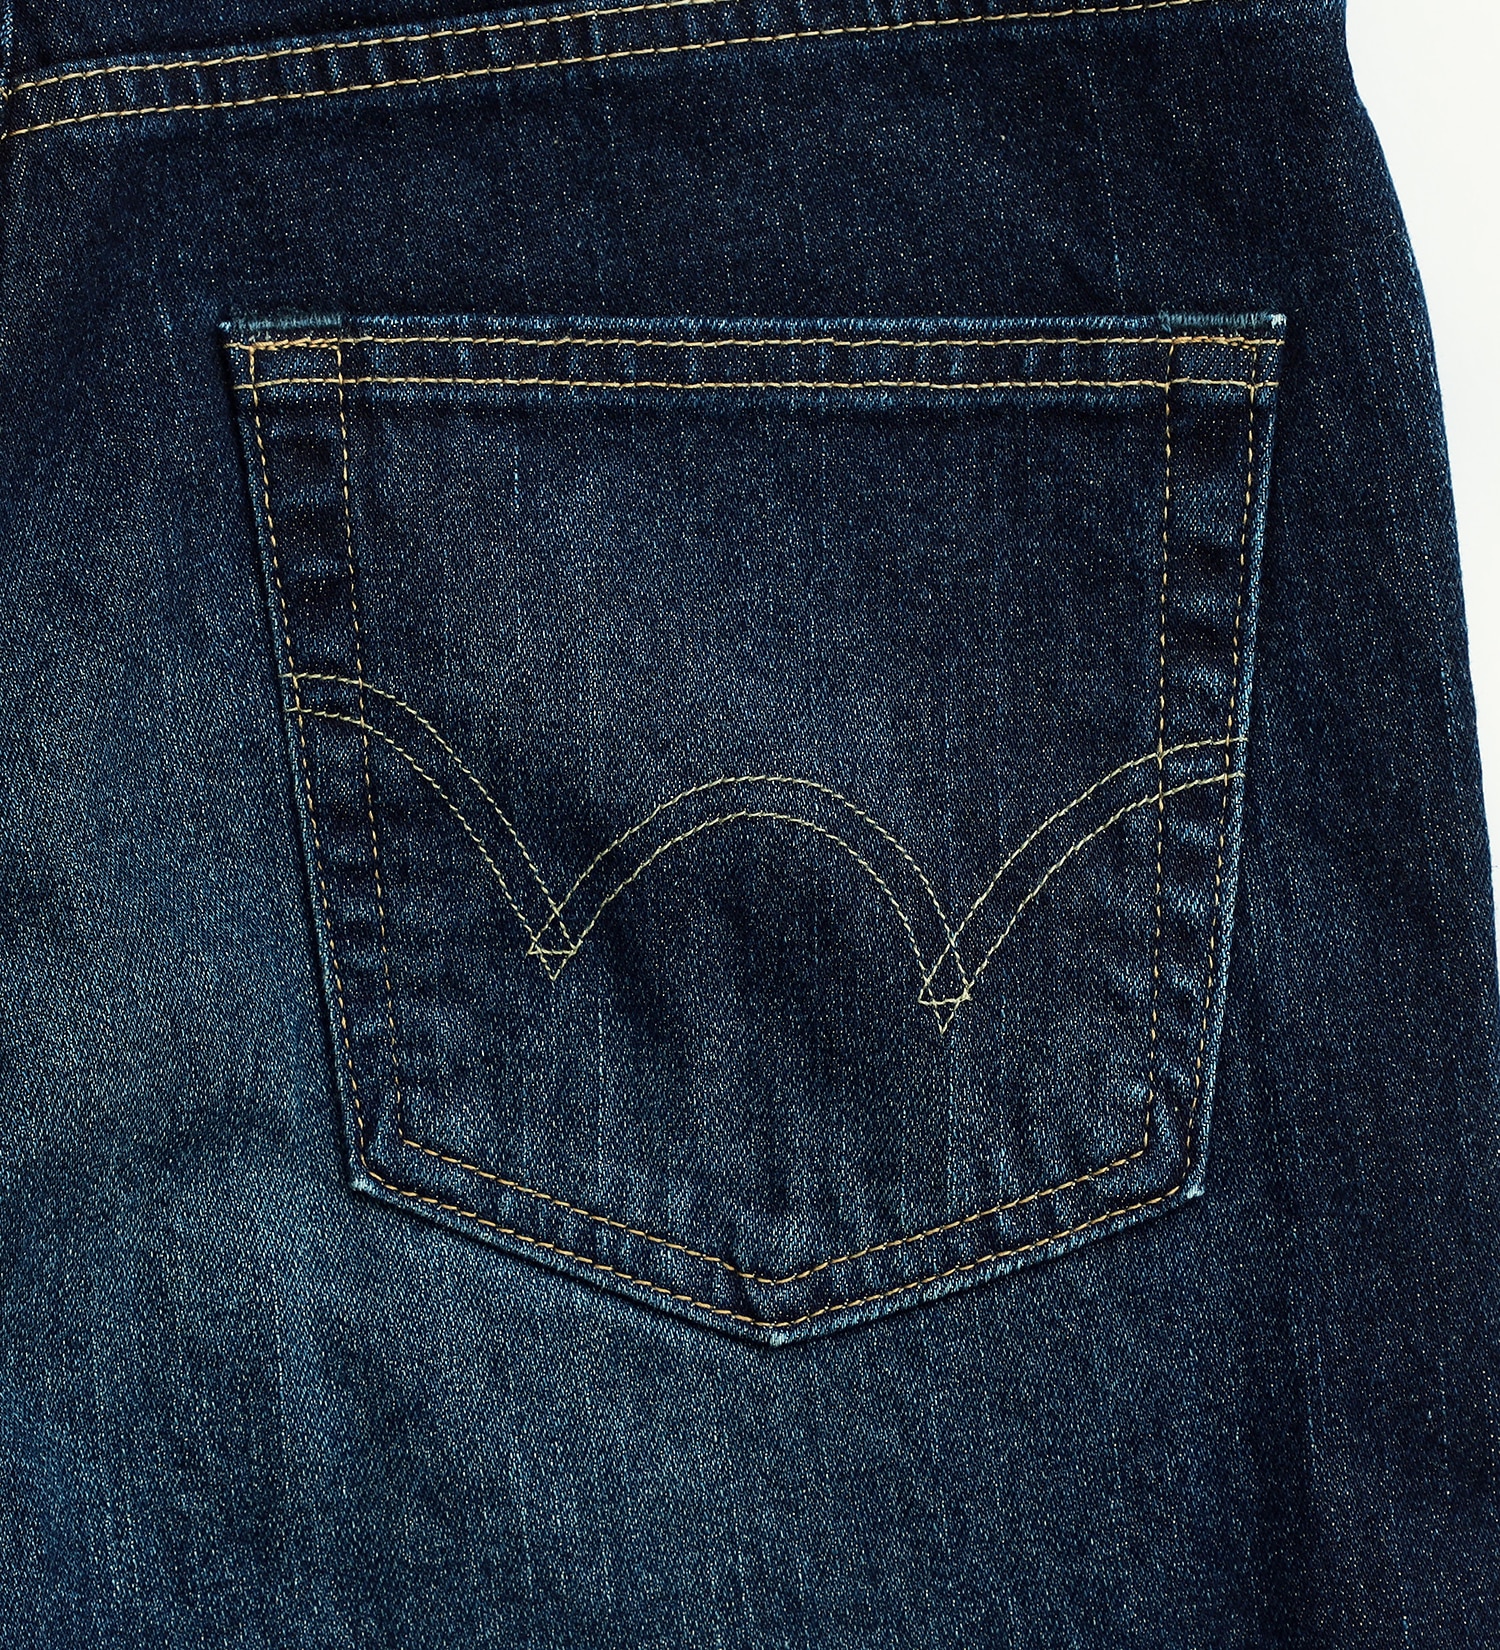 EDWIN(エドウイン)の【試着対象】【WEB限定】五・八デニム レギュラーストレートデニムパンツ ふつうのジーンズ 日本製 MADE IN JAPAN|パンツ/デニムパンツ/メンズ|濃色ブルー